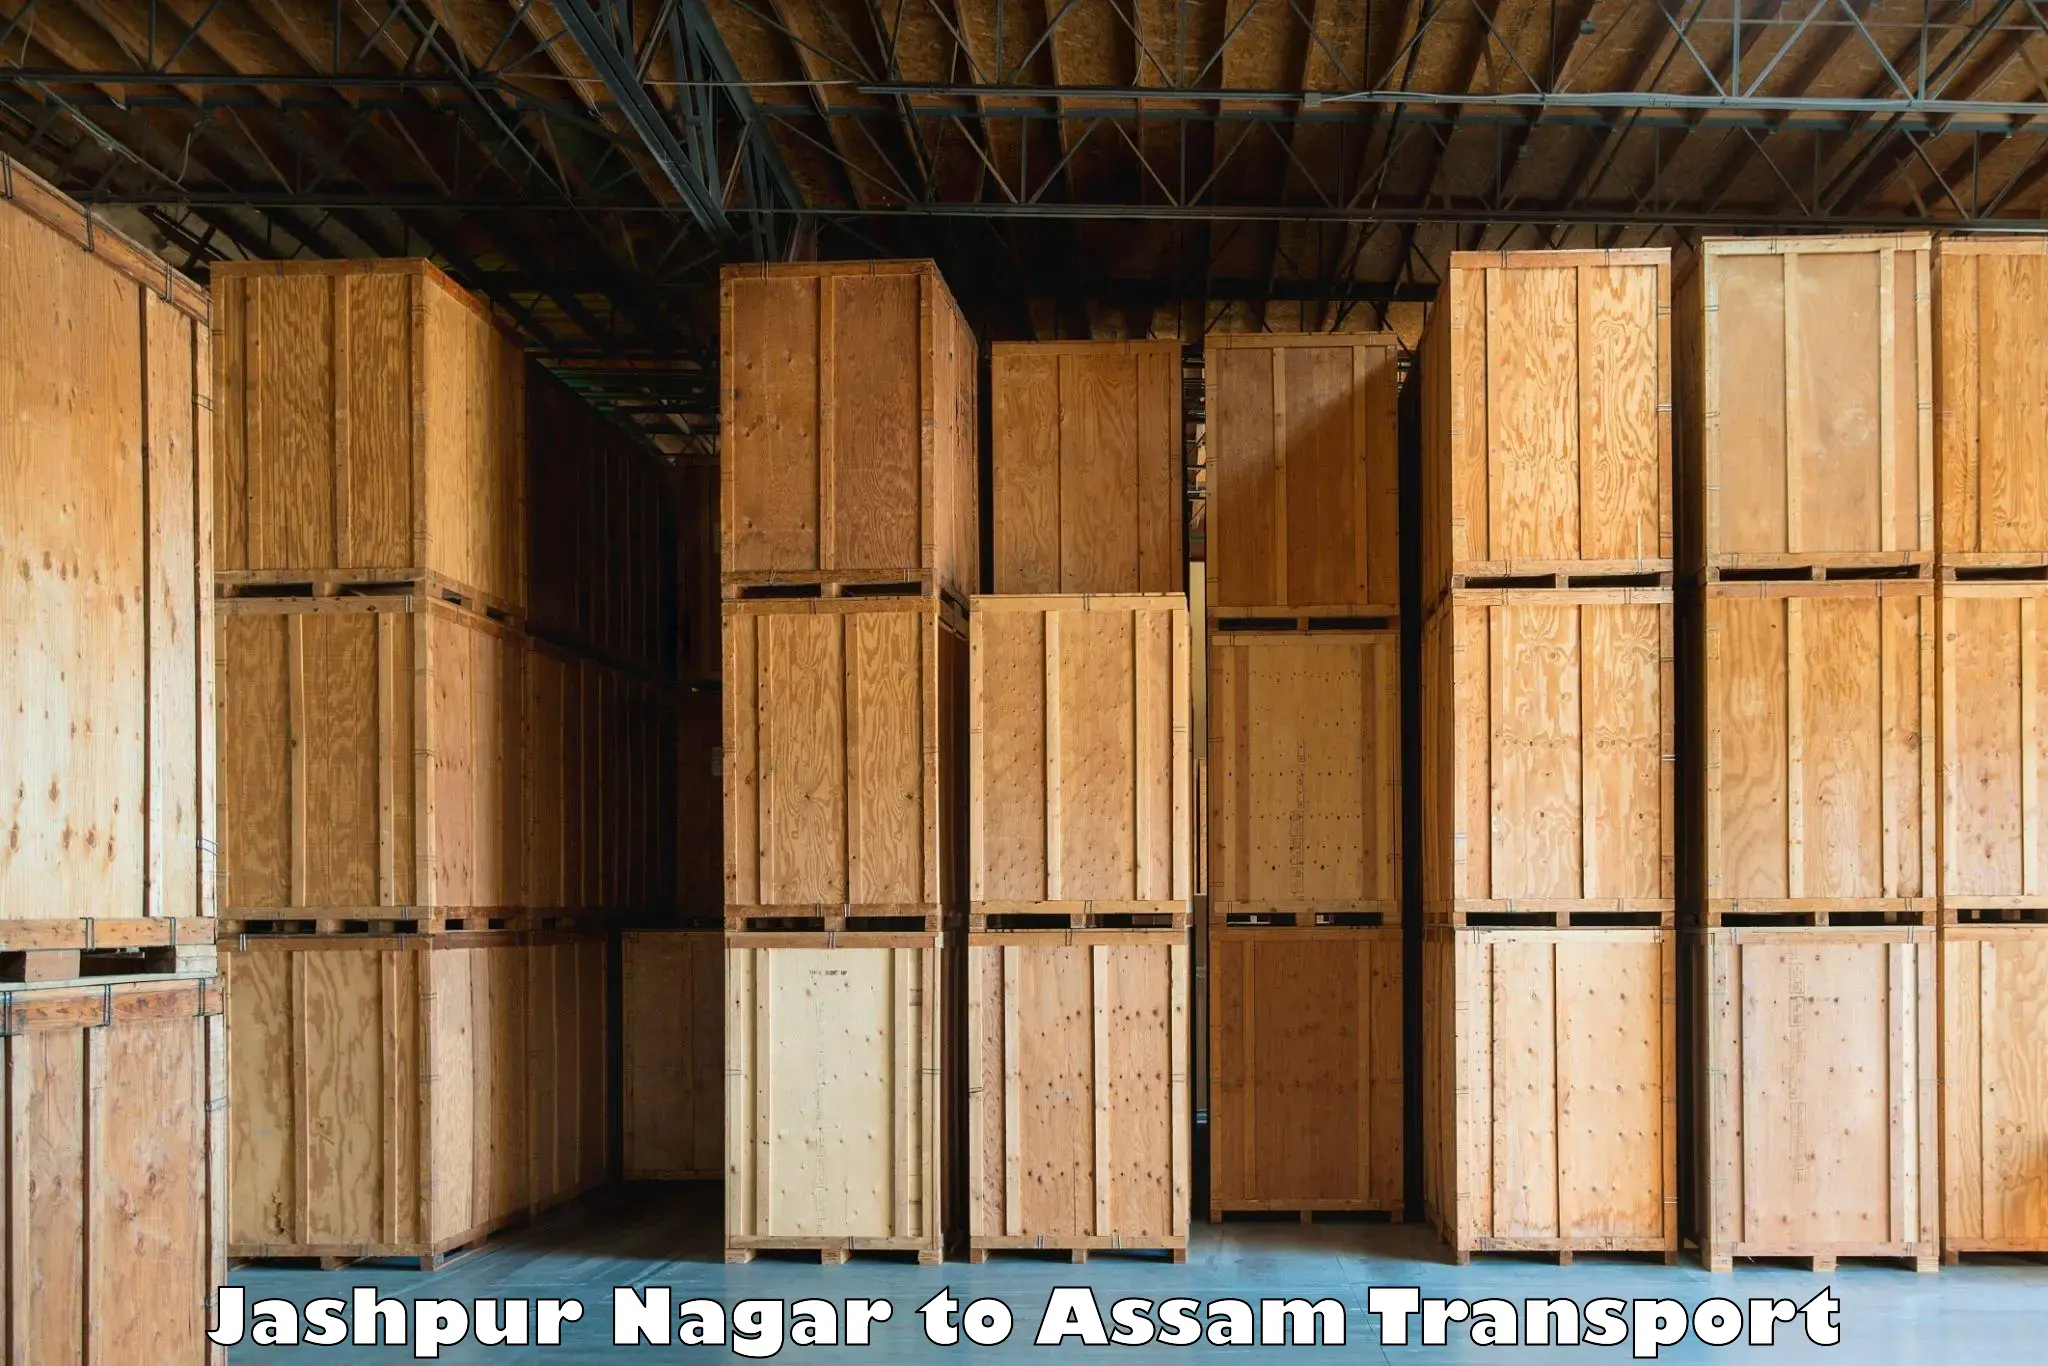 Nearest transport service Jashpur Nagar to Assam